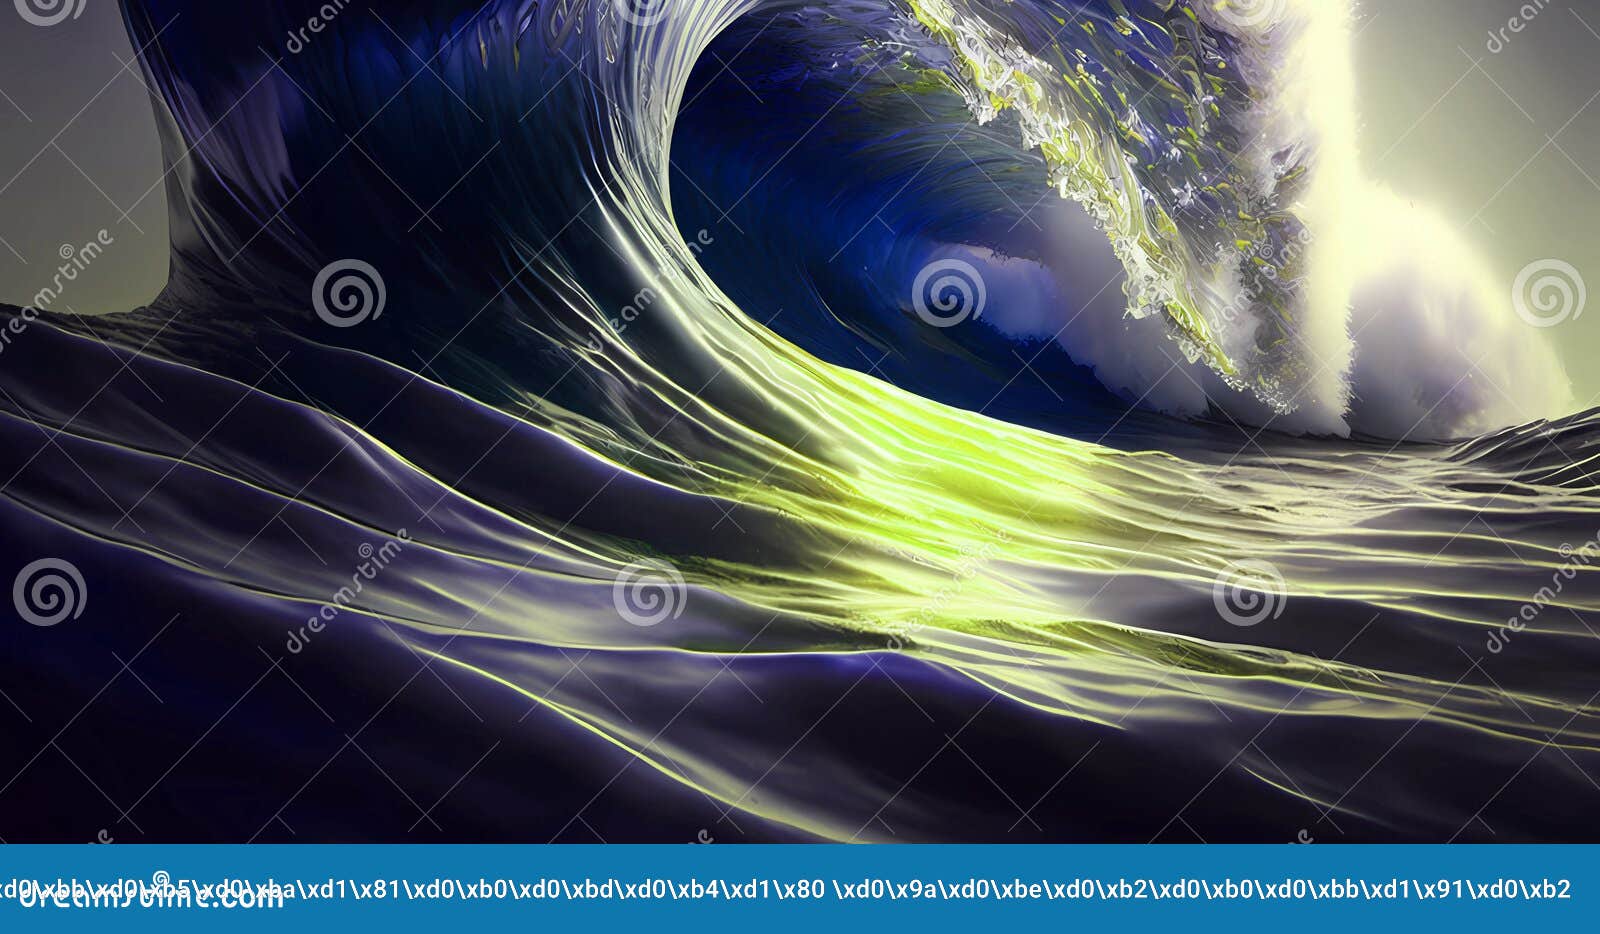 Ocean in Motion for Art Background Stock Illustration ...